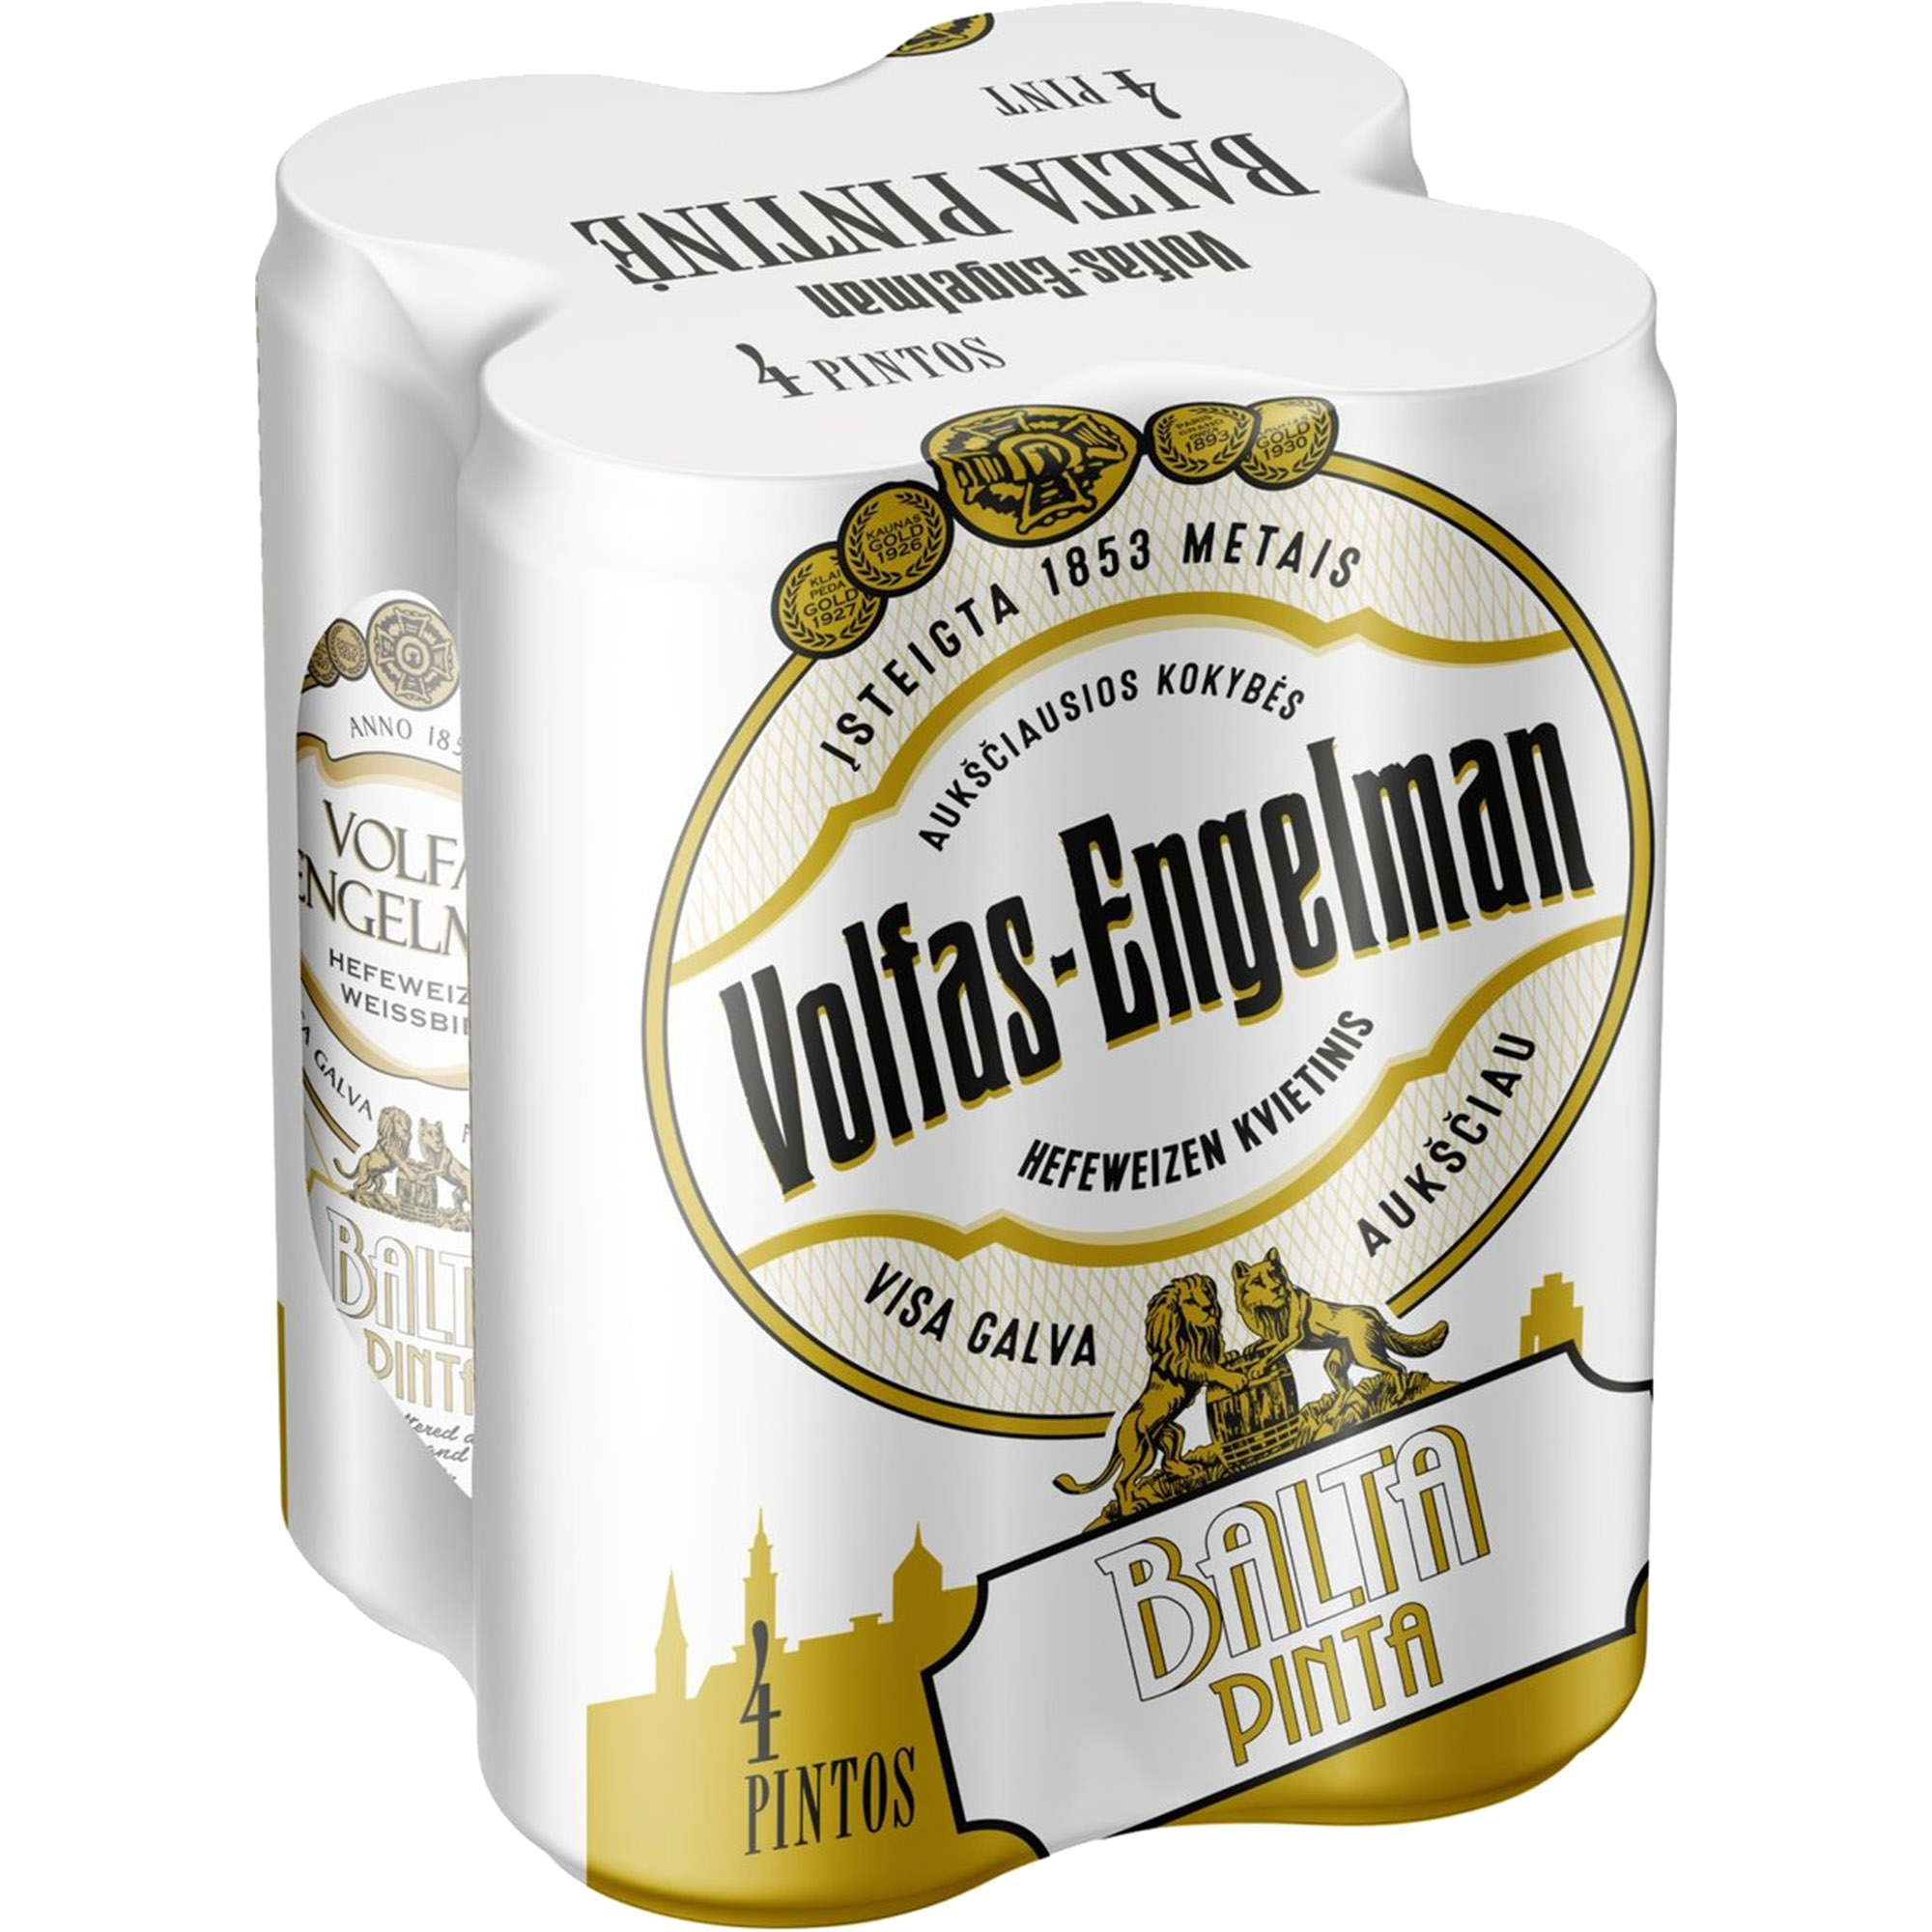 Пиво Volfas Engelman Balta Pinta світле 5% 2.272 л (4 шт. х 0.568 л) з/б - фото 1